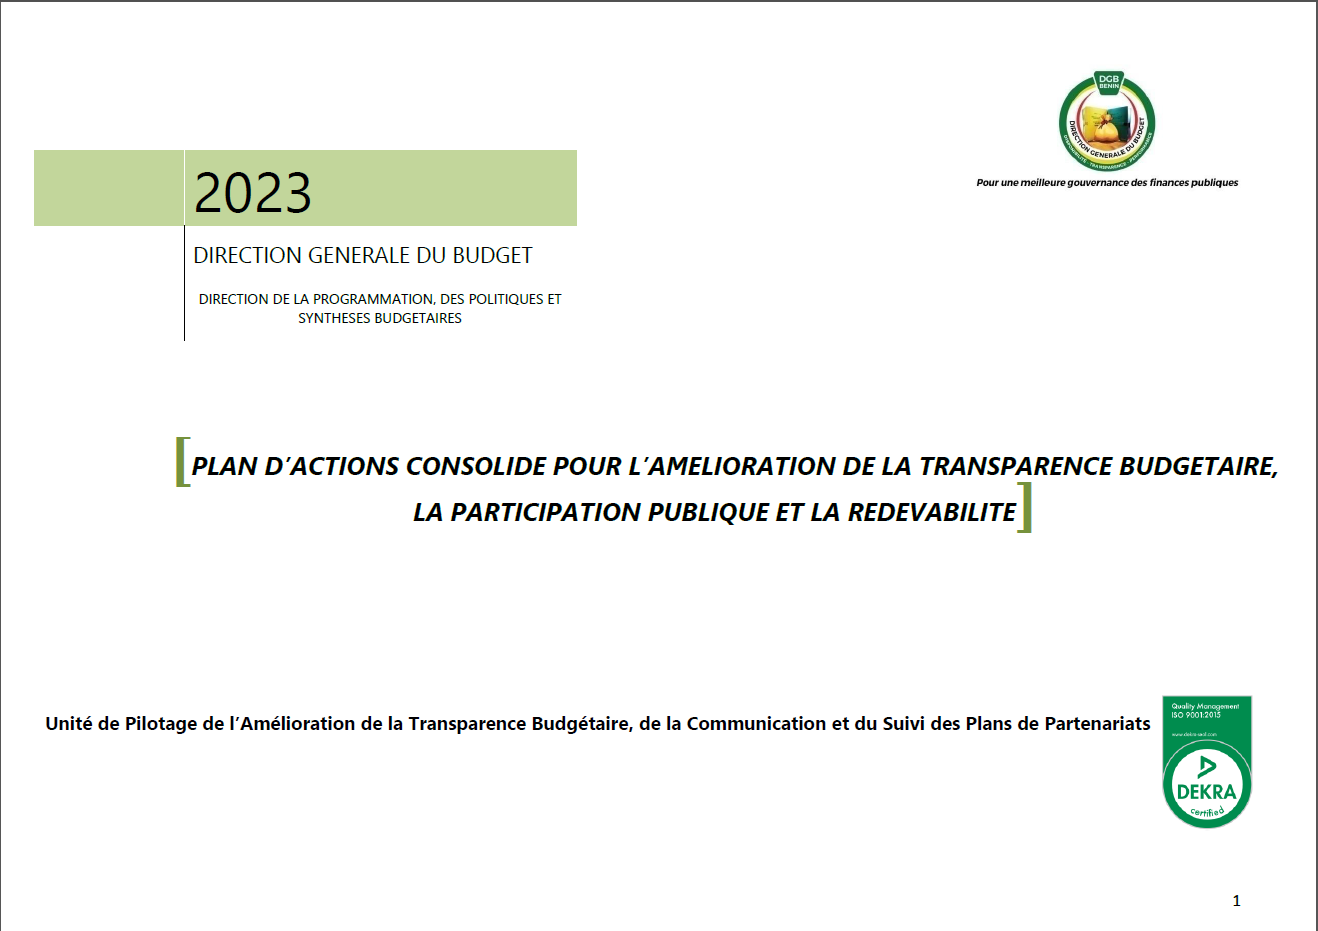 Plan d’actions consolidé 2023 pour l’amélioration de la transparence budgétaire, la participation publique et la redevabilité